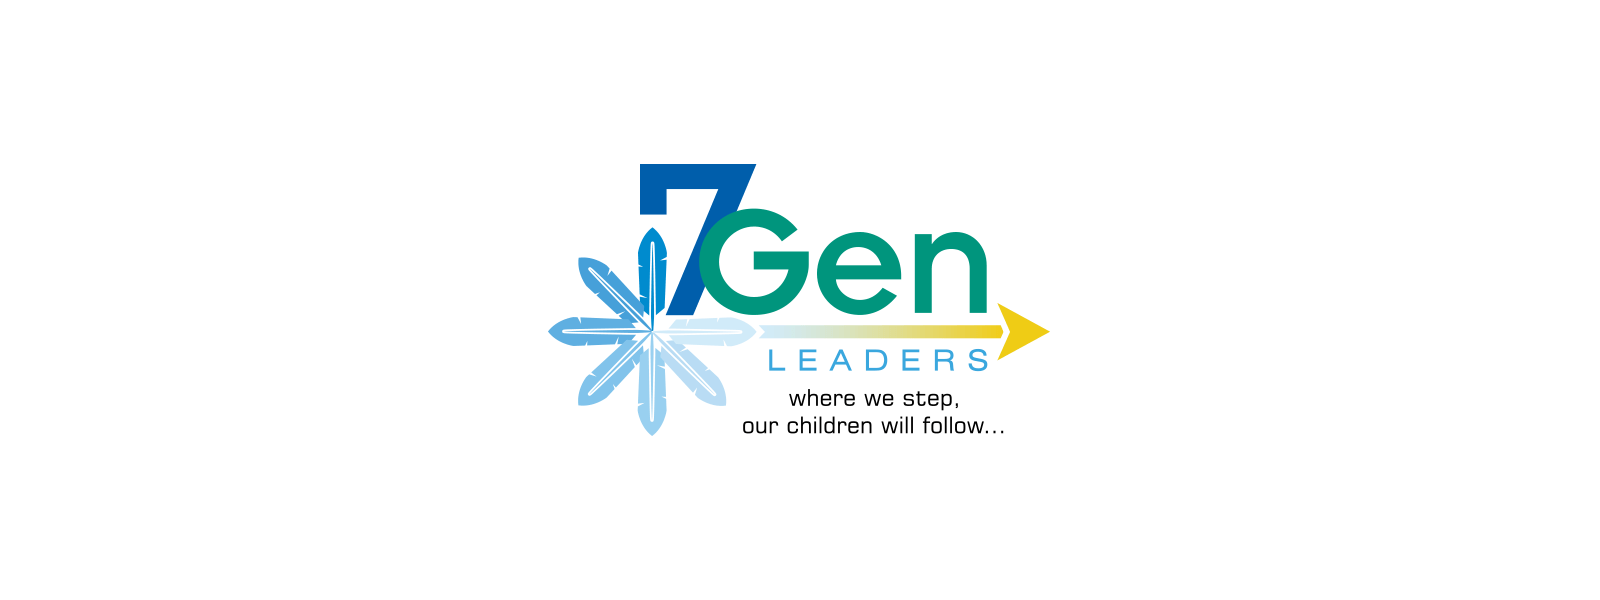 7gen logo